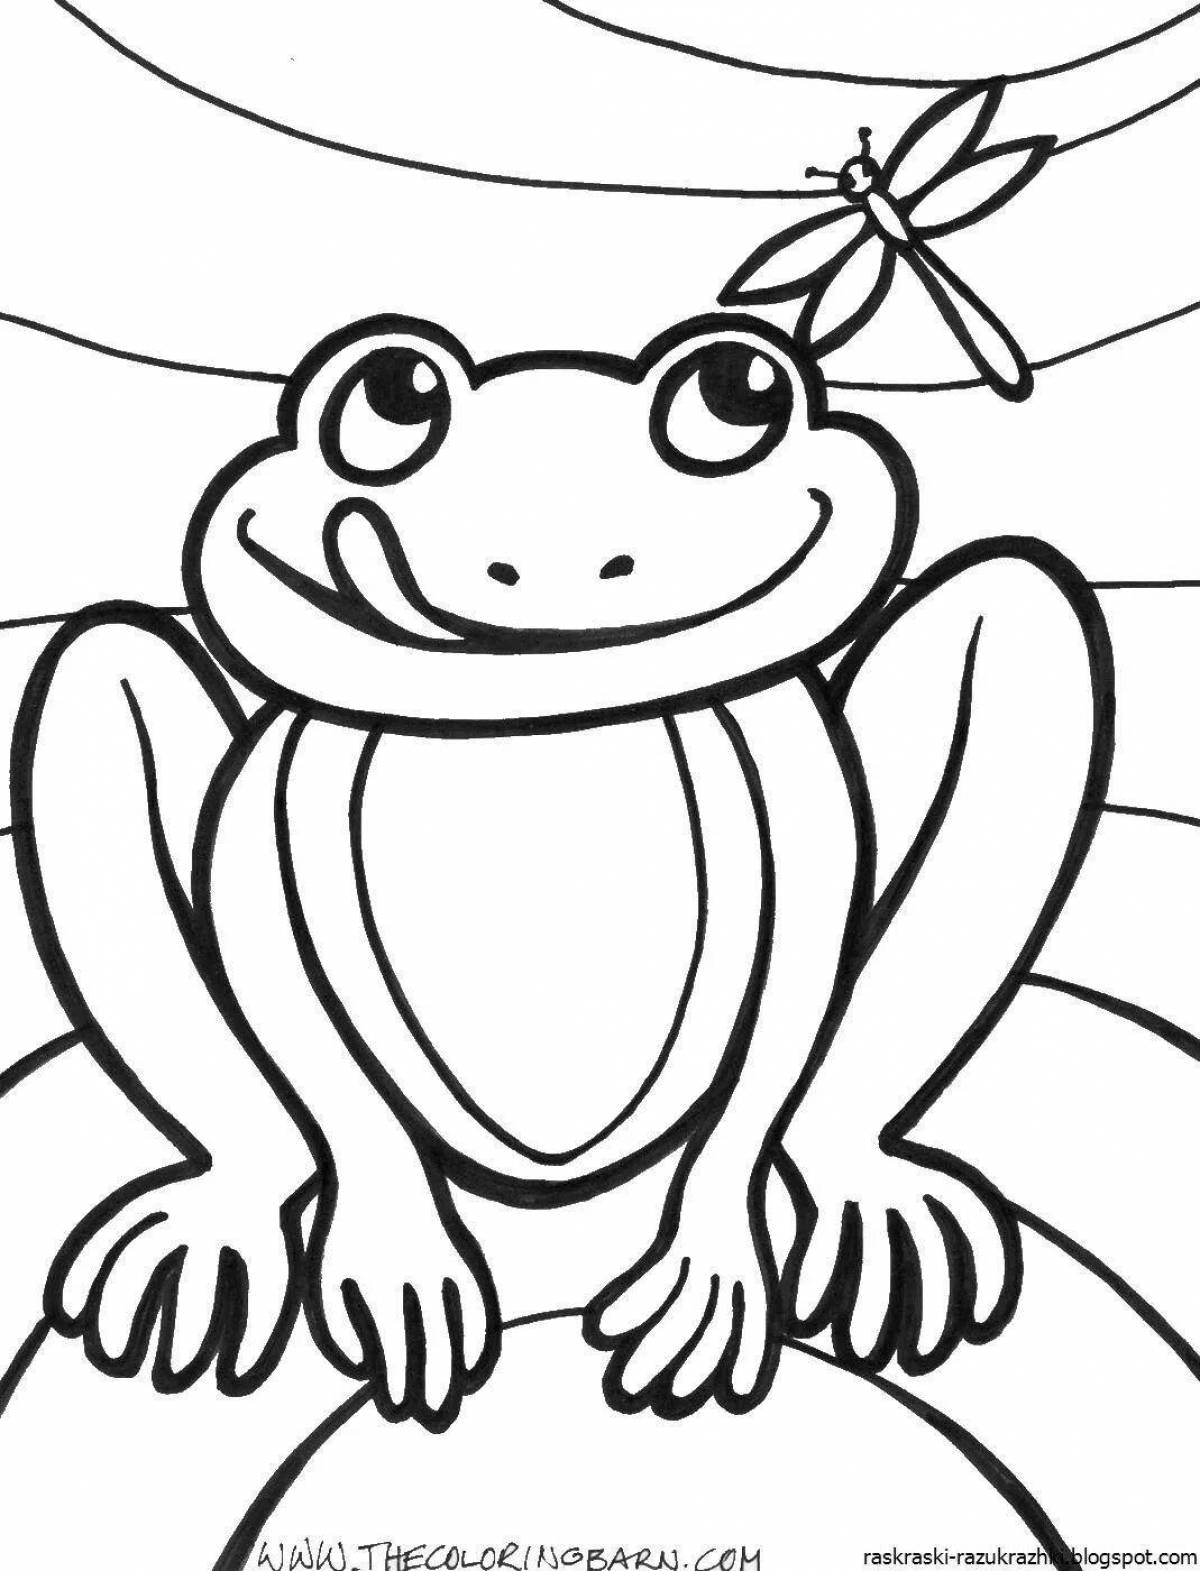 Увлекательная раскраска жаба для детей